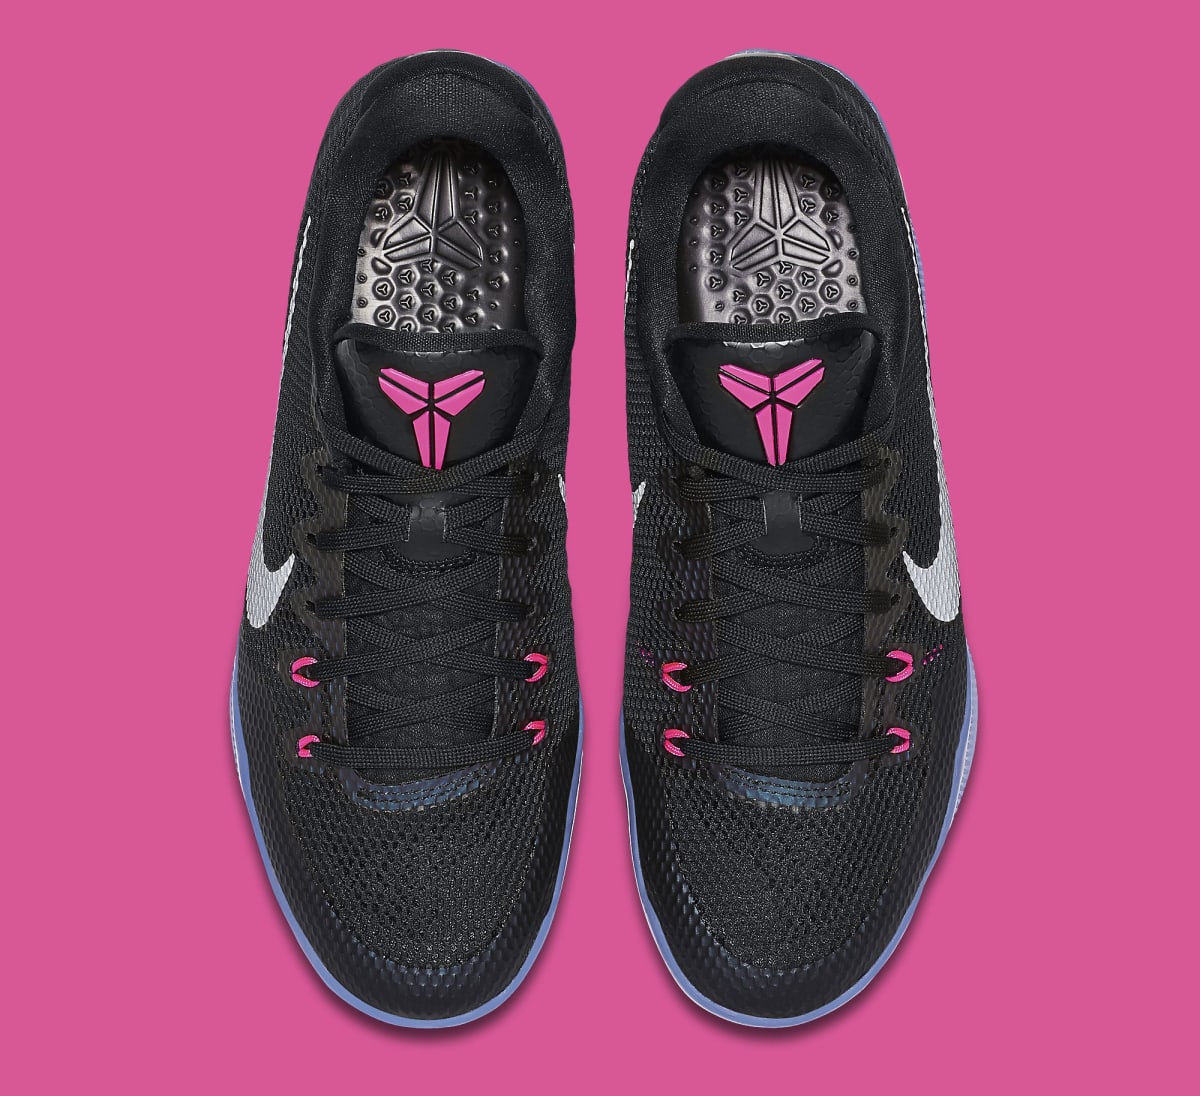 Nike Kobe 11 Black Pink 836184-005 